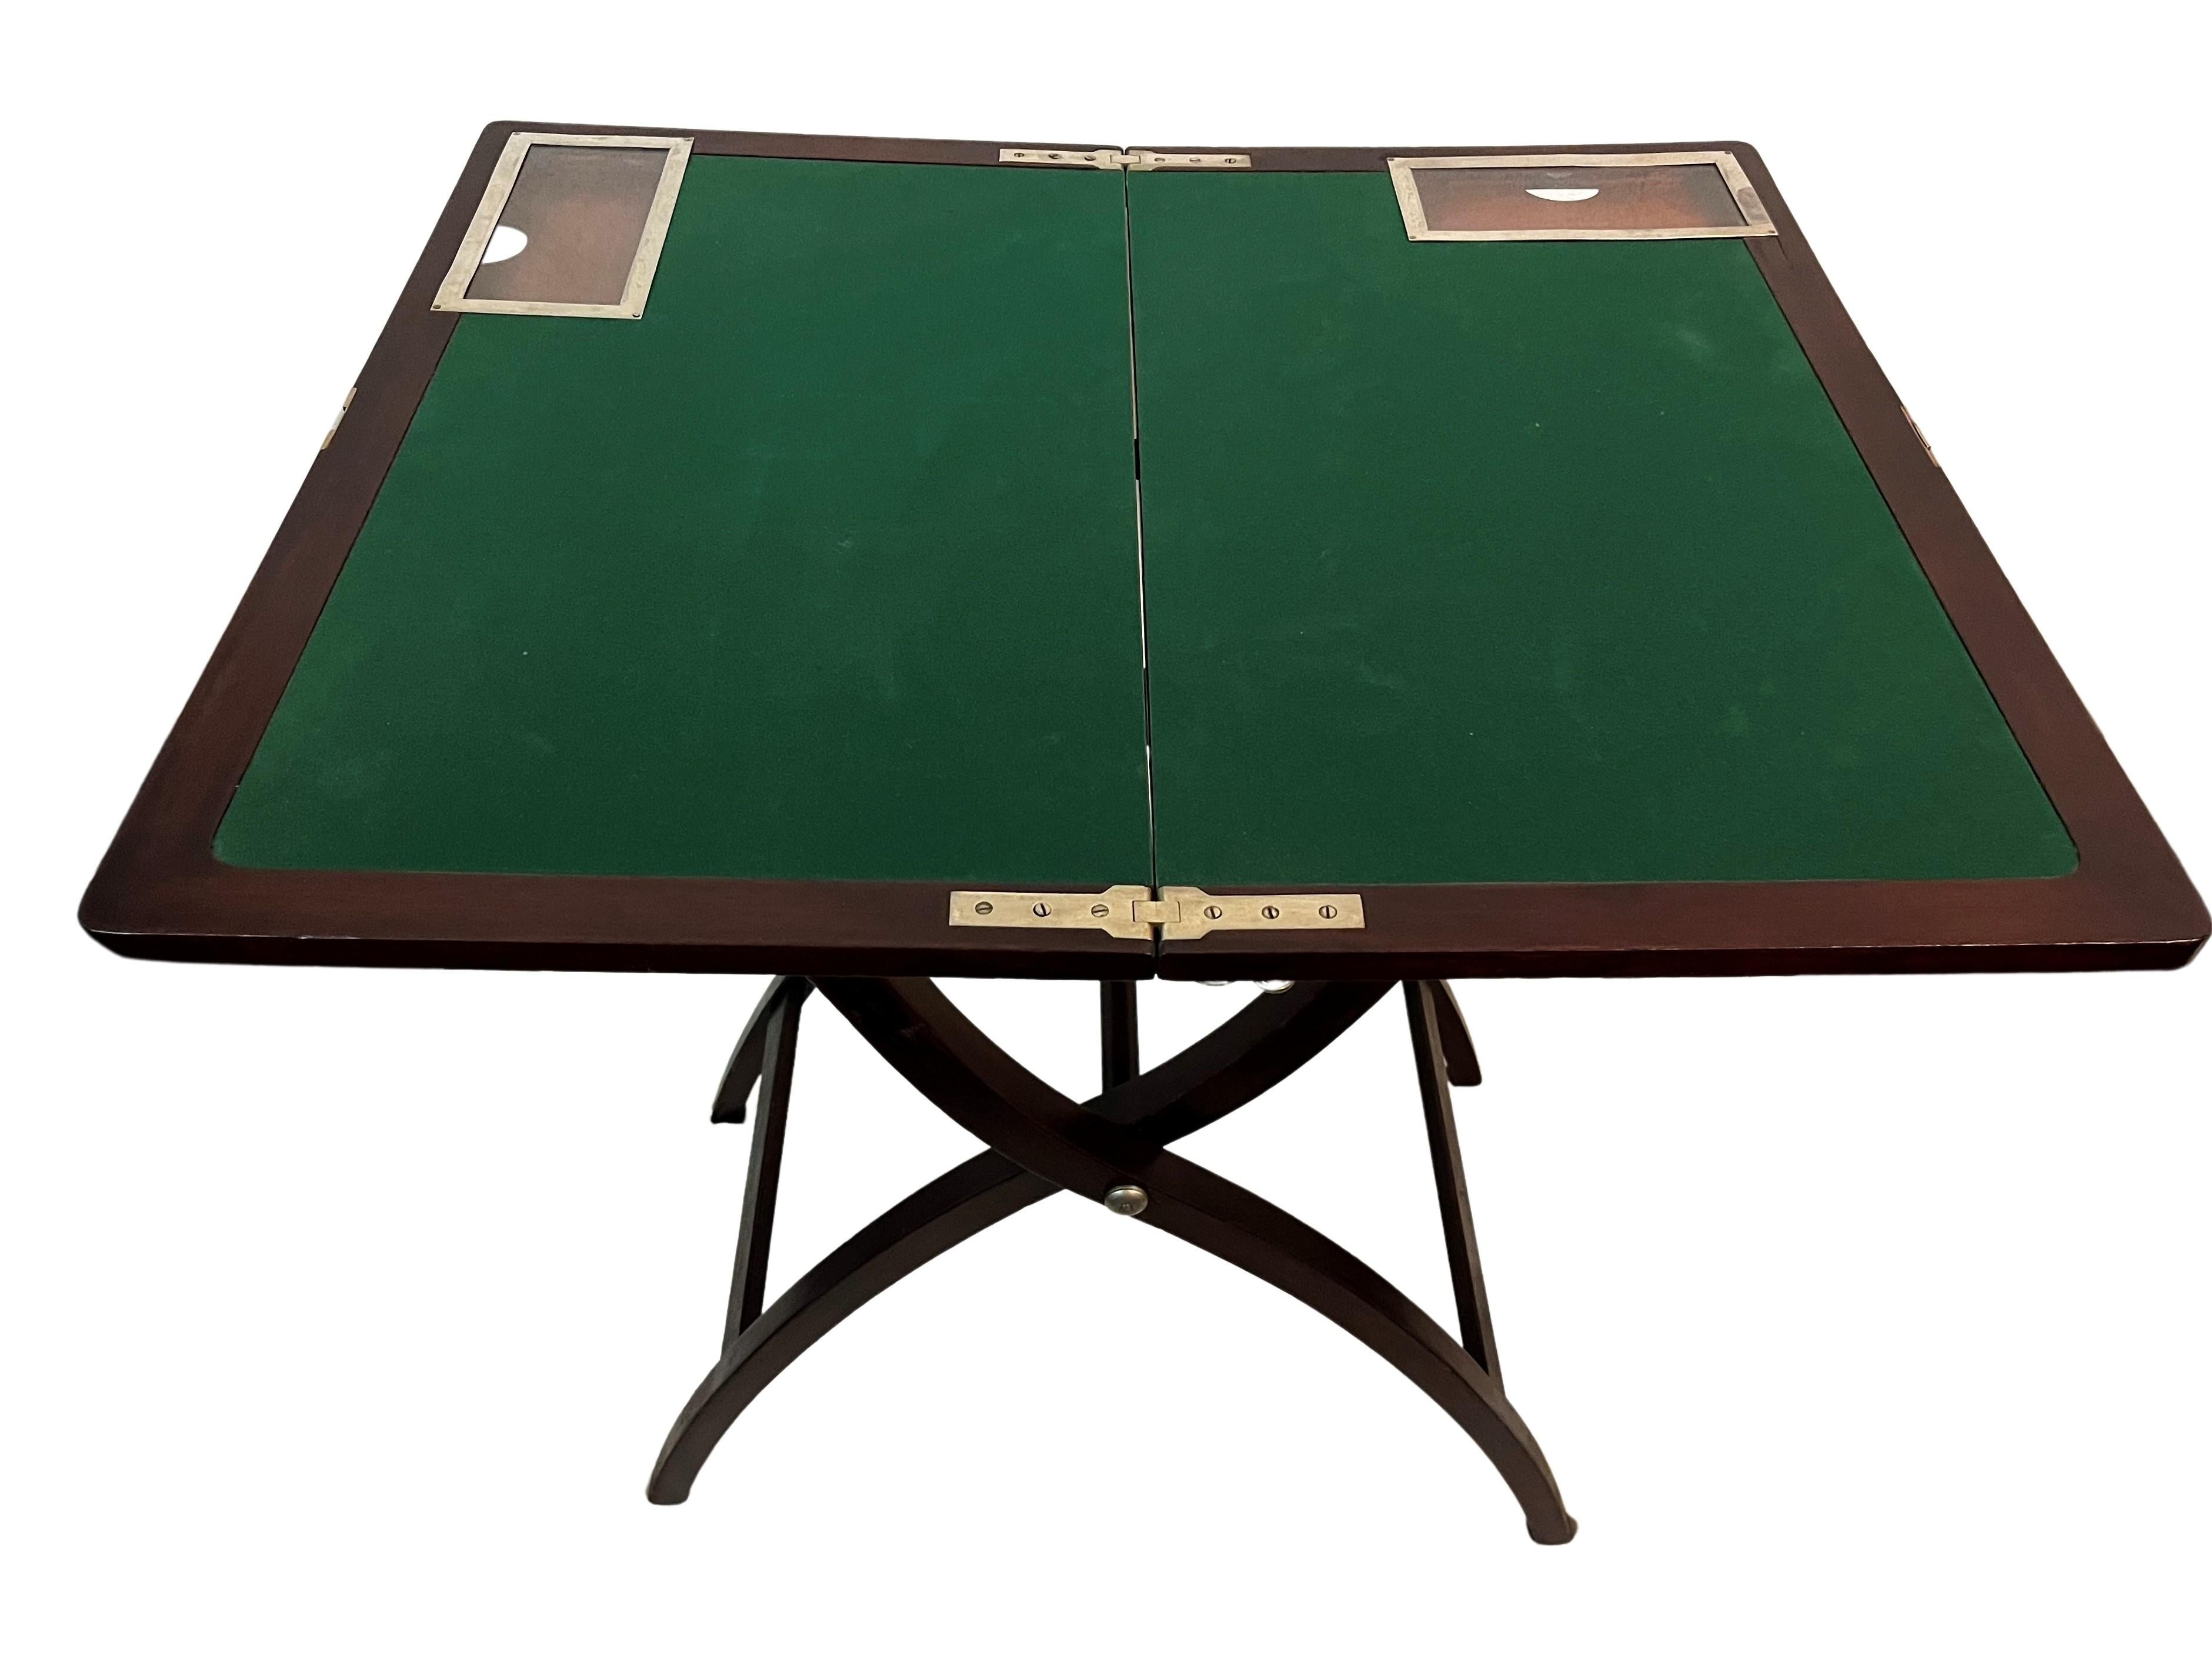 Table de jeu très rare, avec un mécanisme de pliage d'une exécution fascinante. Cet objet a été fabriqué en Angleterre, vers 1920, dans la période Art déco.

Lorsqu'elle est dépliée, une surface de jeu tapissée de feutre vert apparaît. Deux petits